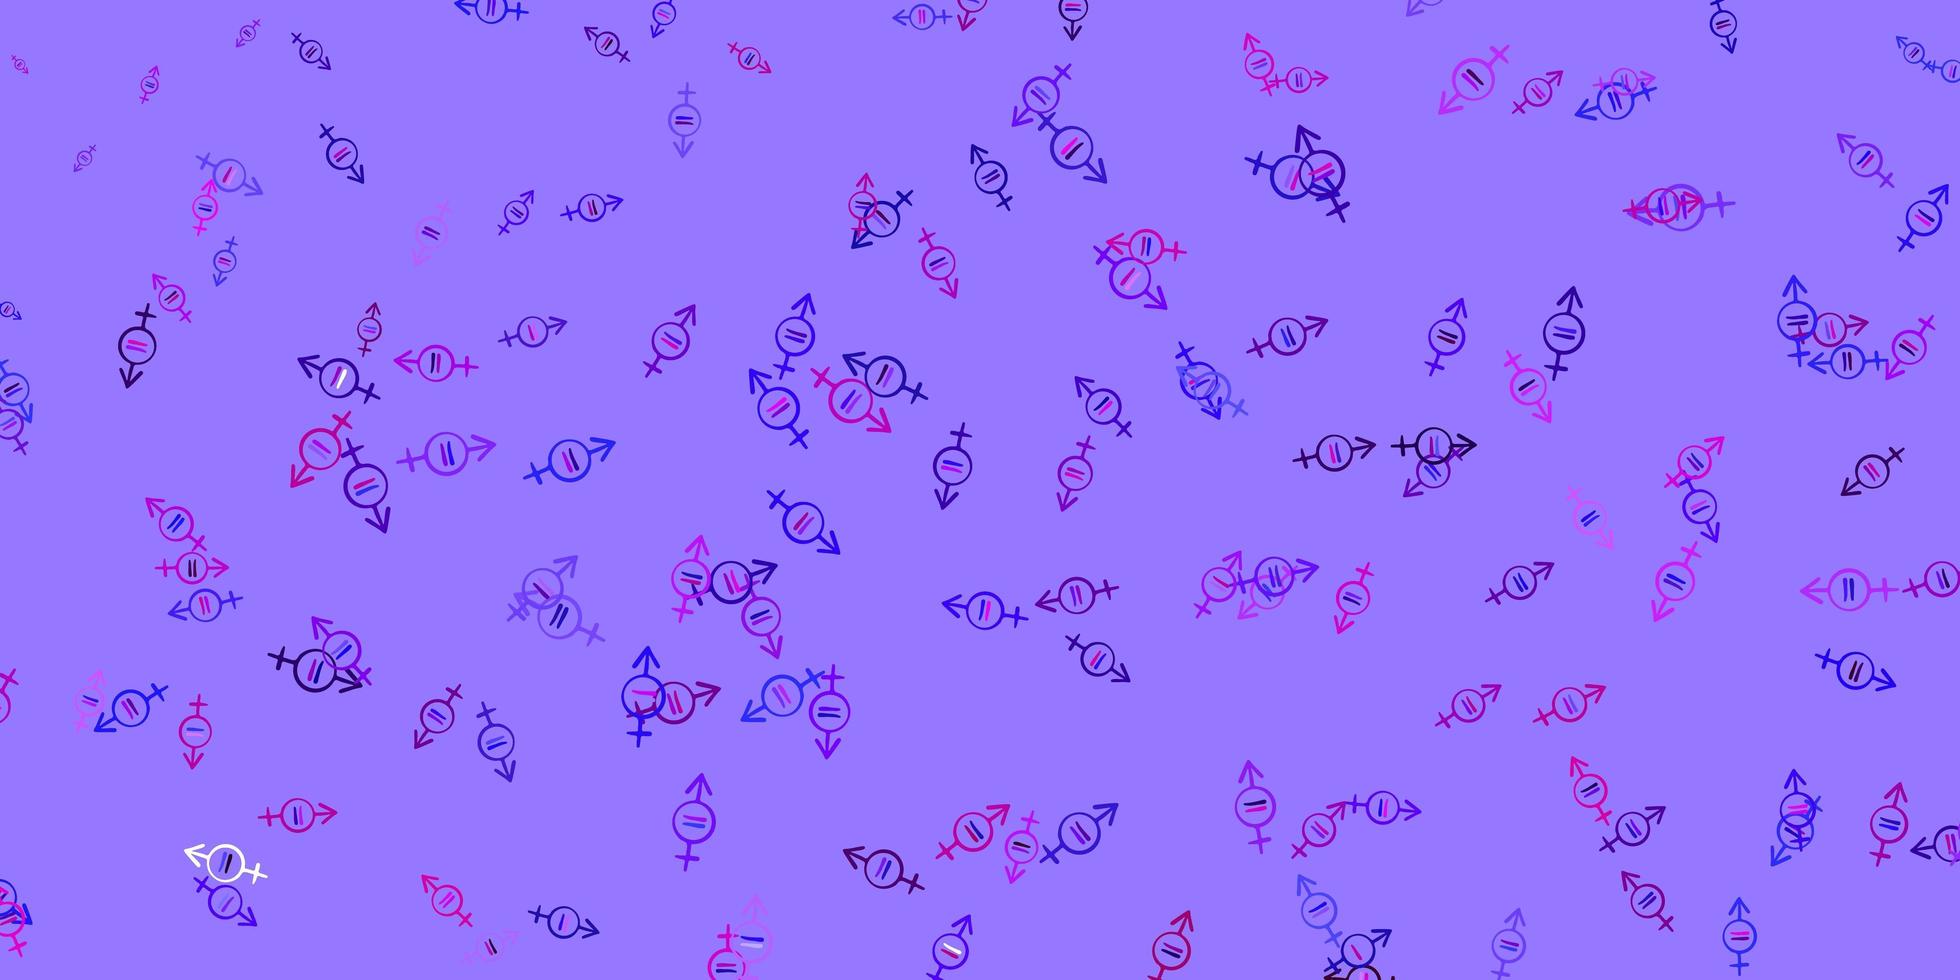 patrón de vector púrpura claro, rosa con elementos de feminismo.